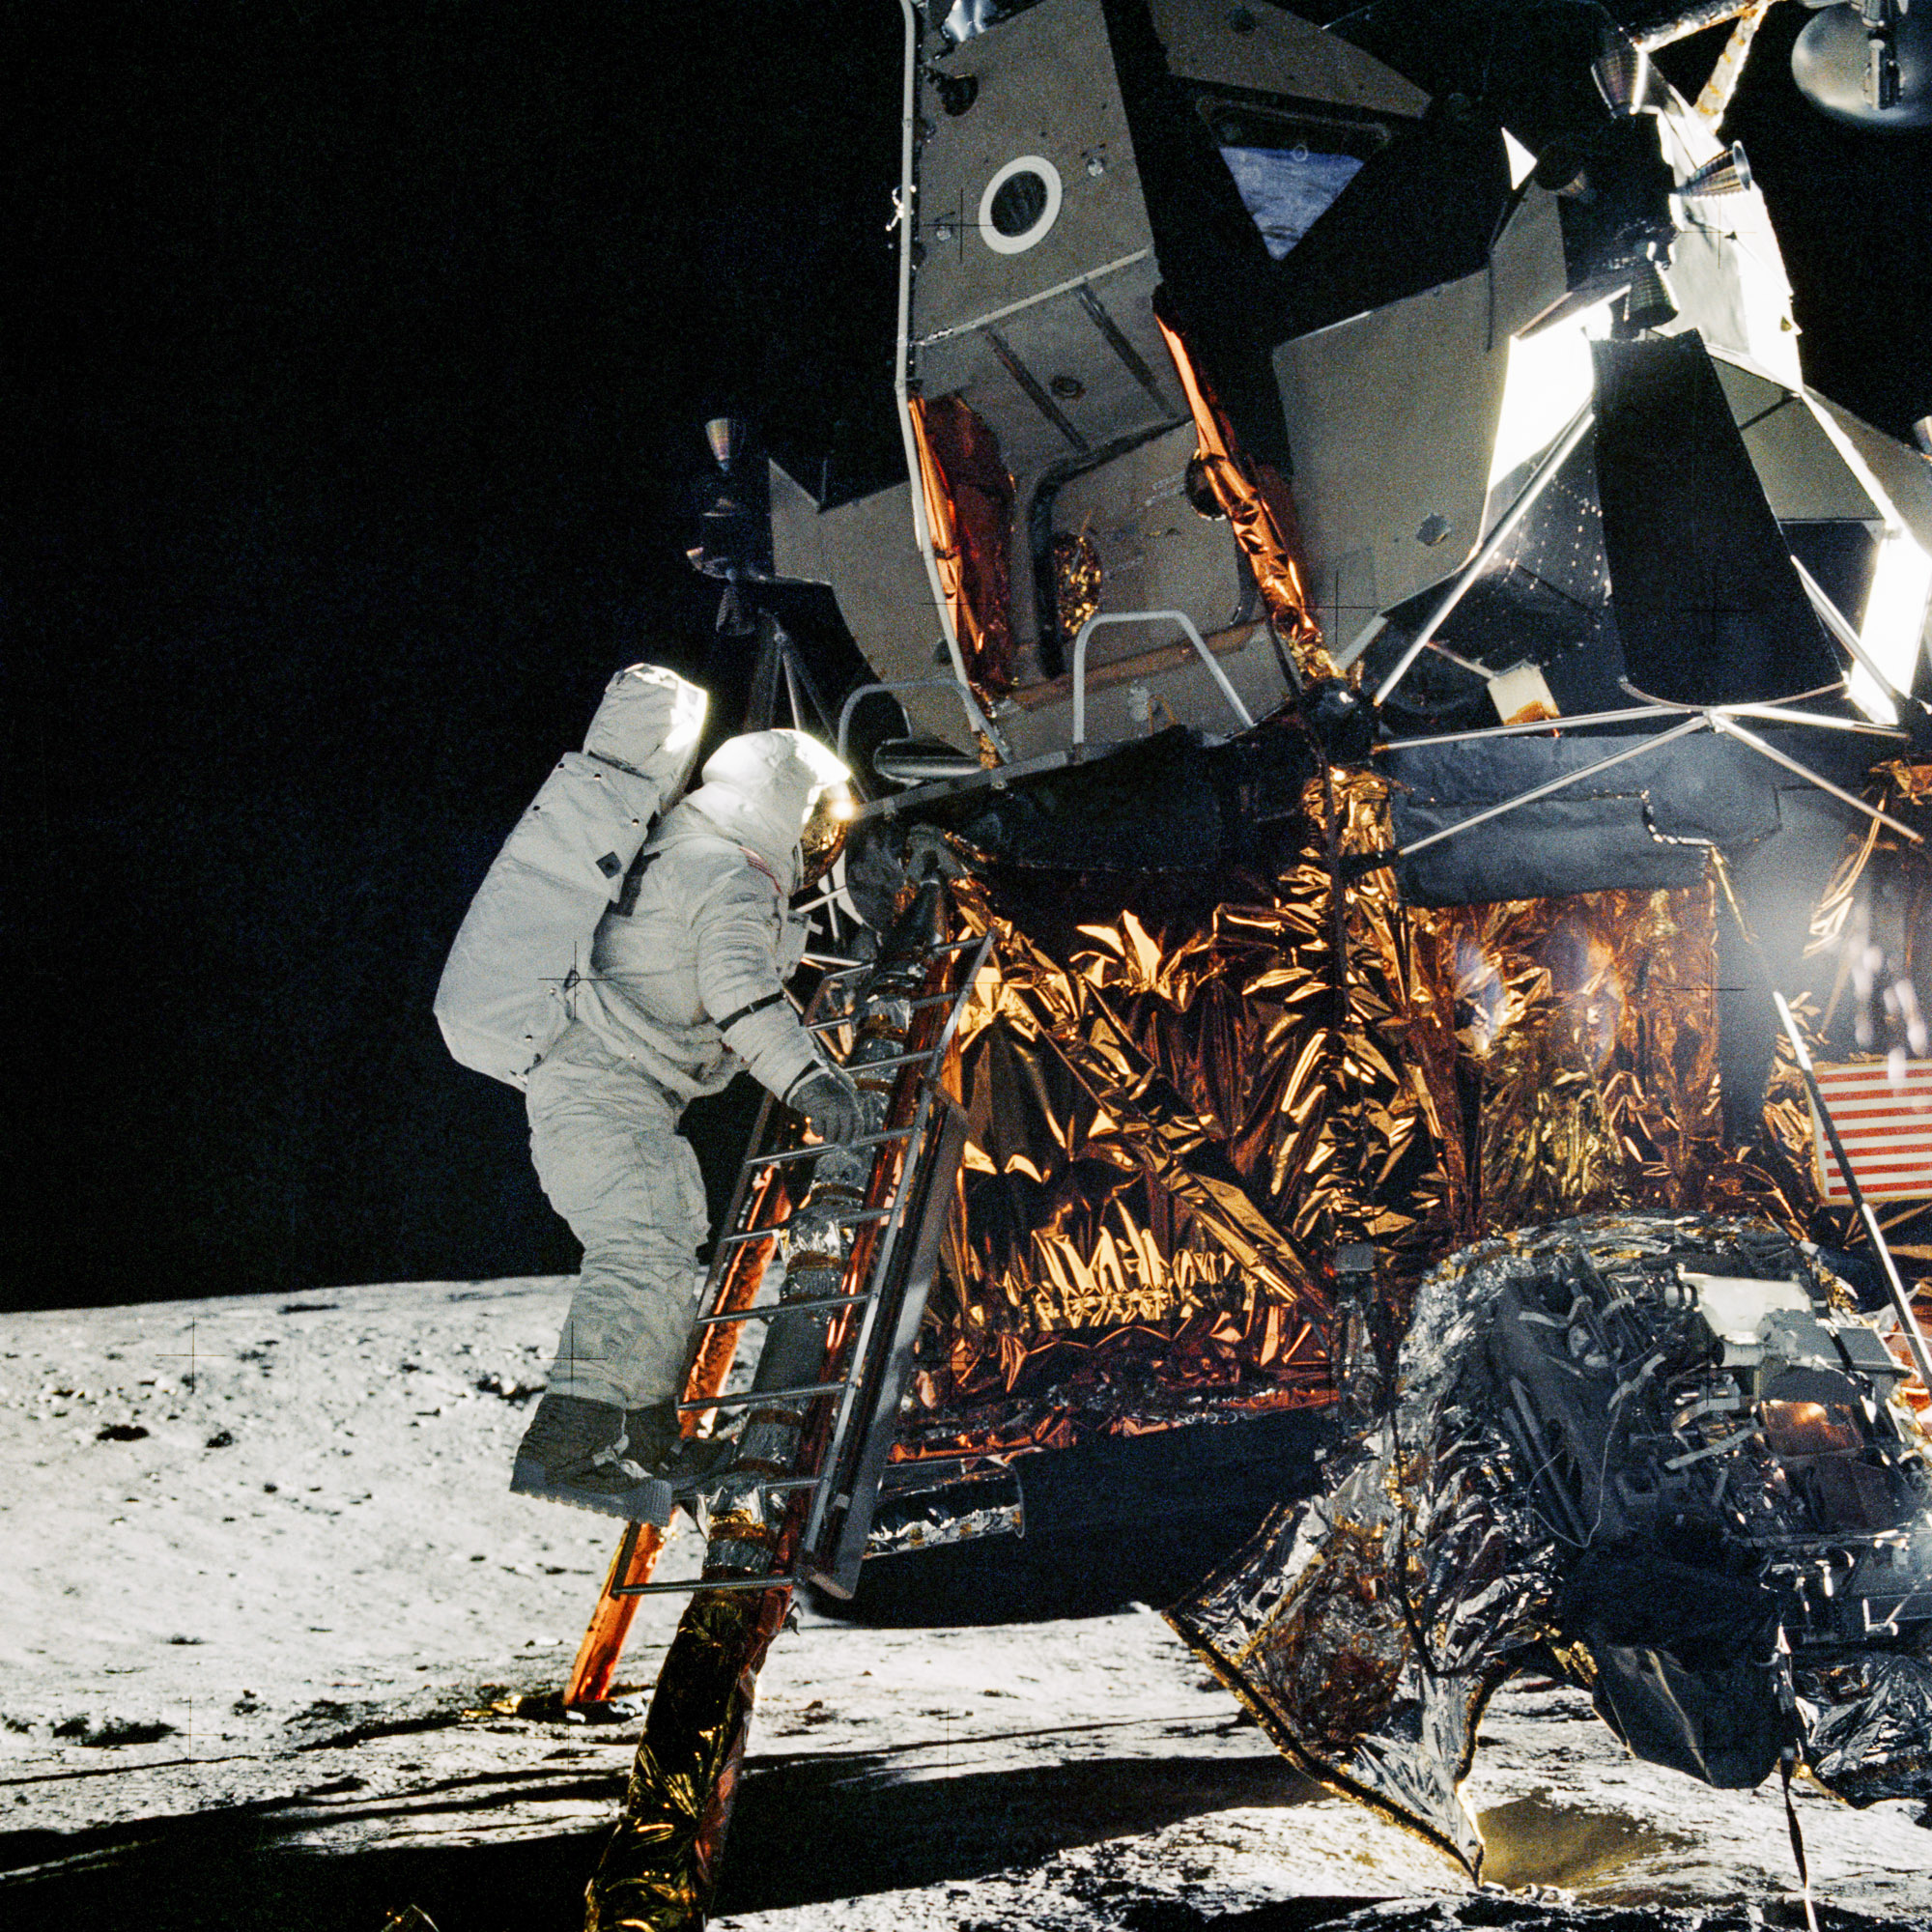 Astronaut Alan Bean exiting the Apollo 12 Lunar Module. Credit: NASA